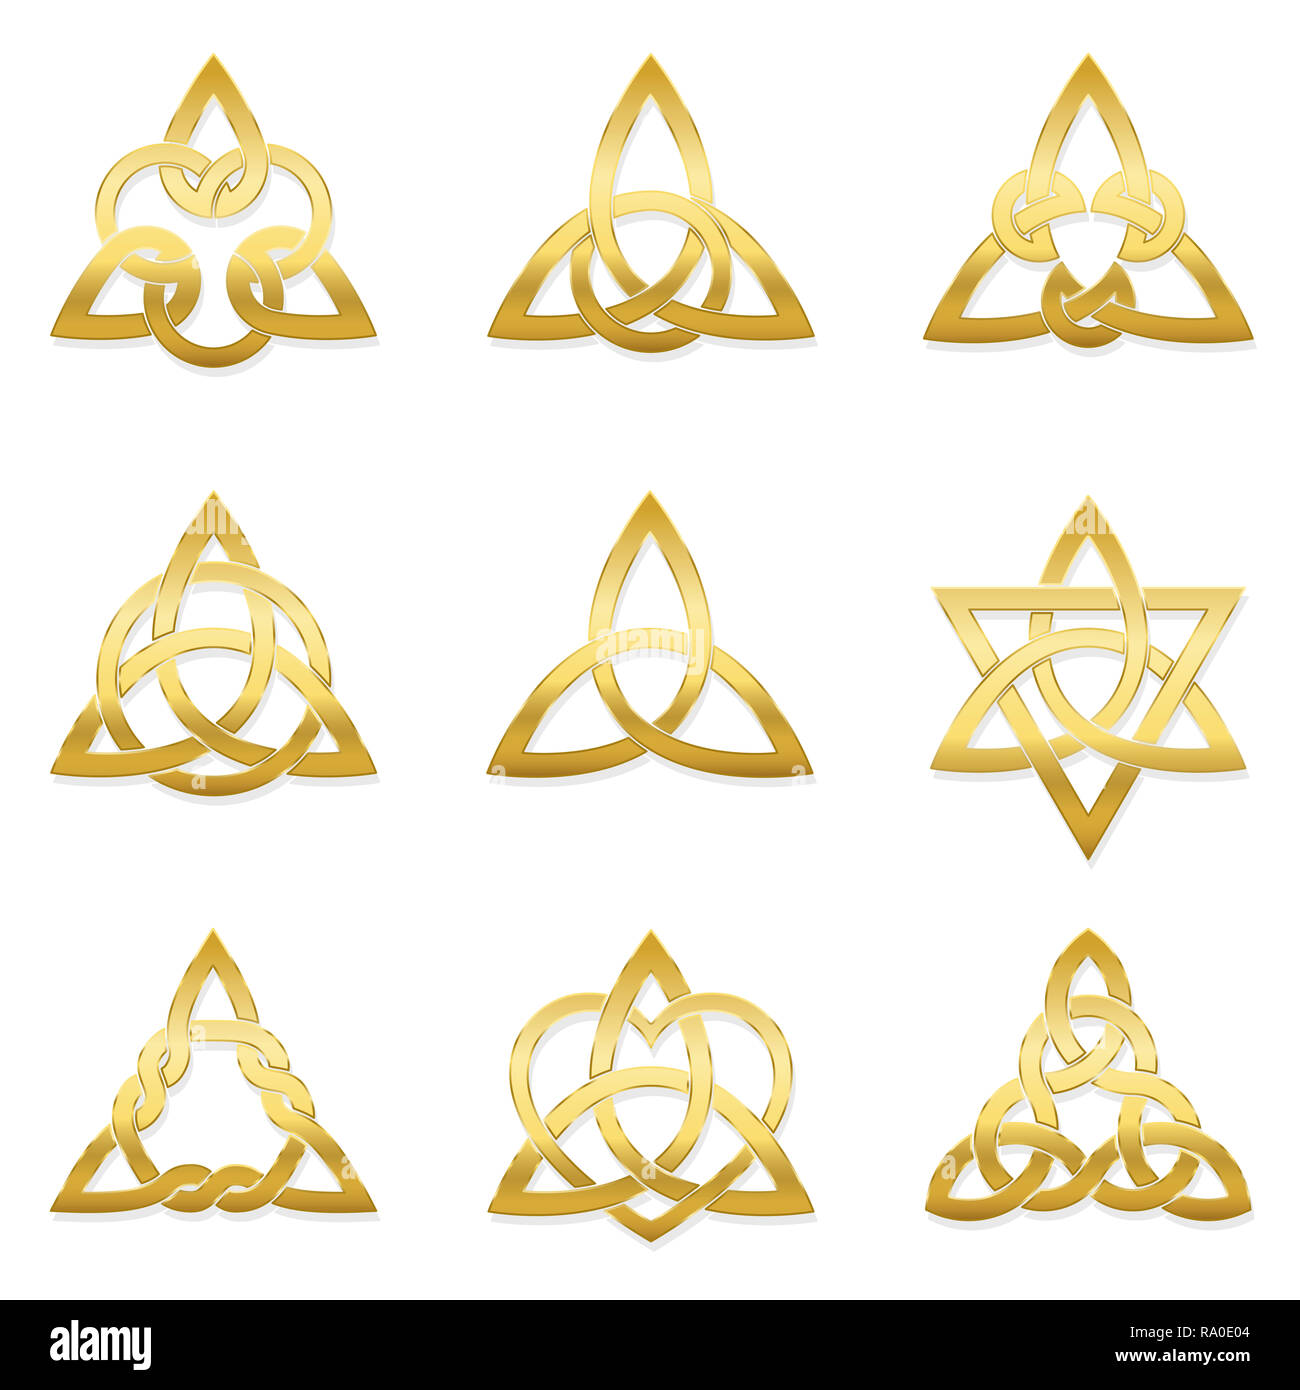 Spirale celtique triskele doré sur fond blanc. Le Triskèle. Un motif composé d'une spirale triple présentant une symétrie rotationnelle. Banque D'Images